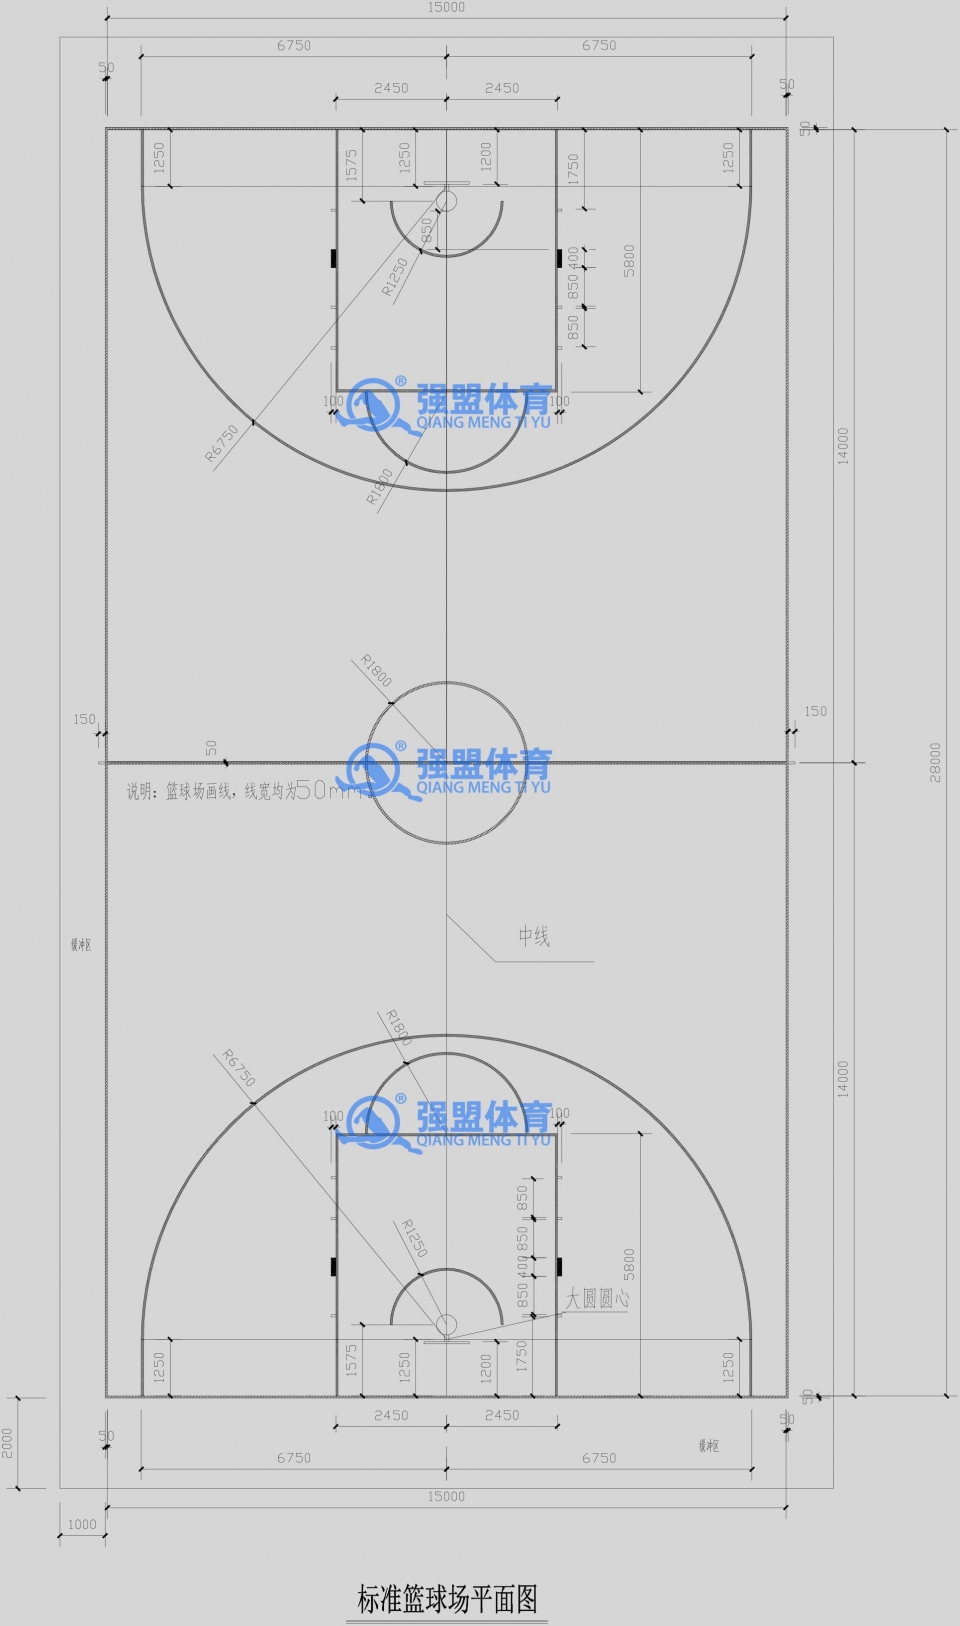 篮球场标准尺寸,篮球场标准尺寸图,篮球场尺寸,篮球场平面图